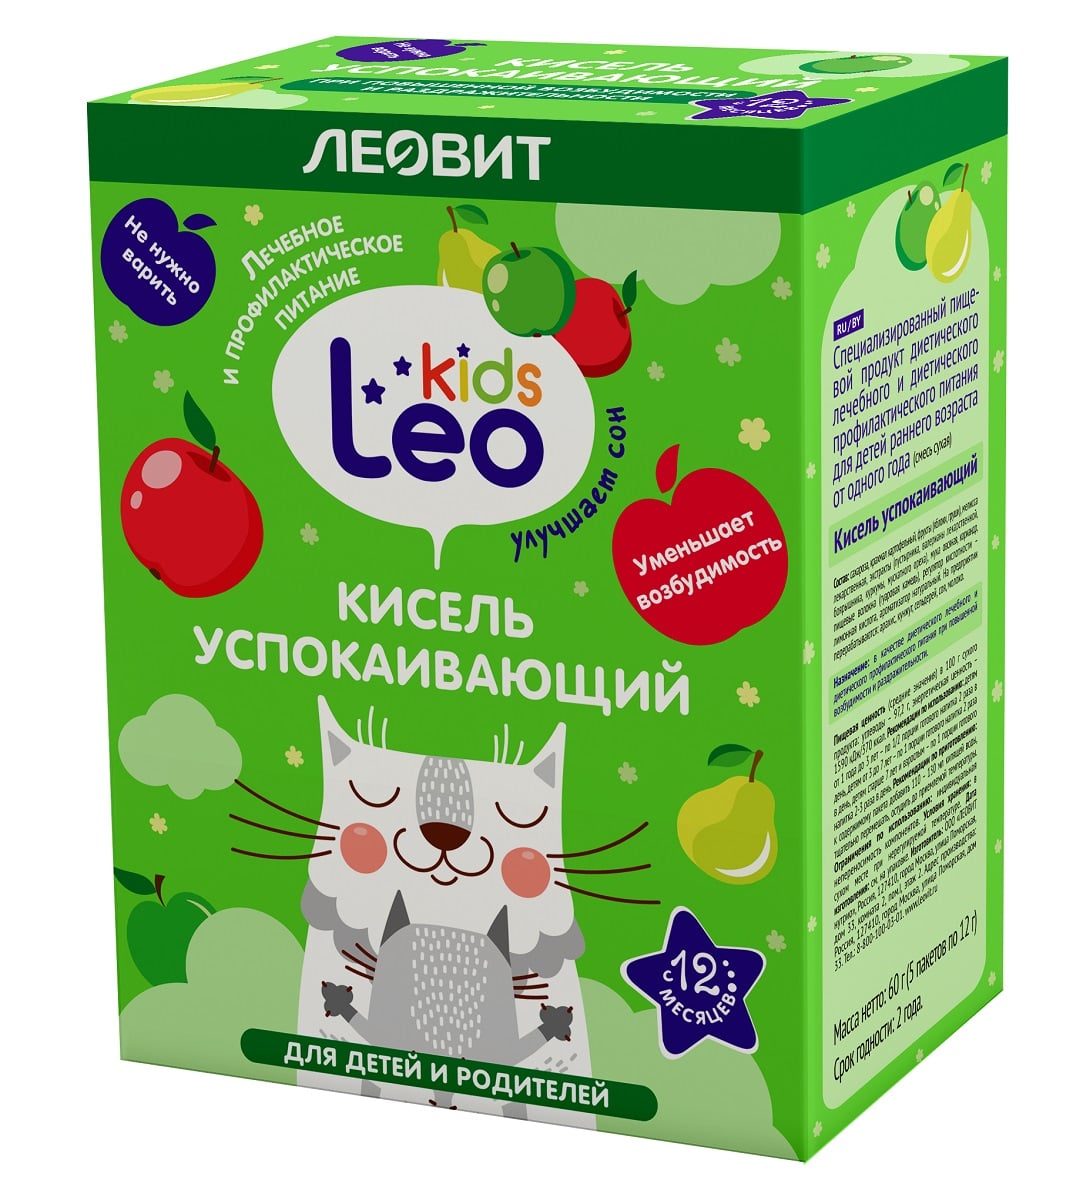 Купить Леовит Кисель успокаивающий для детей, 5 пакетов х 12 г (Леовит, Leo Kids), Россия